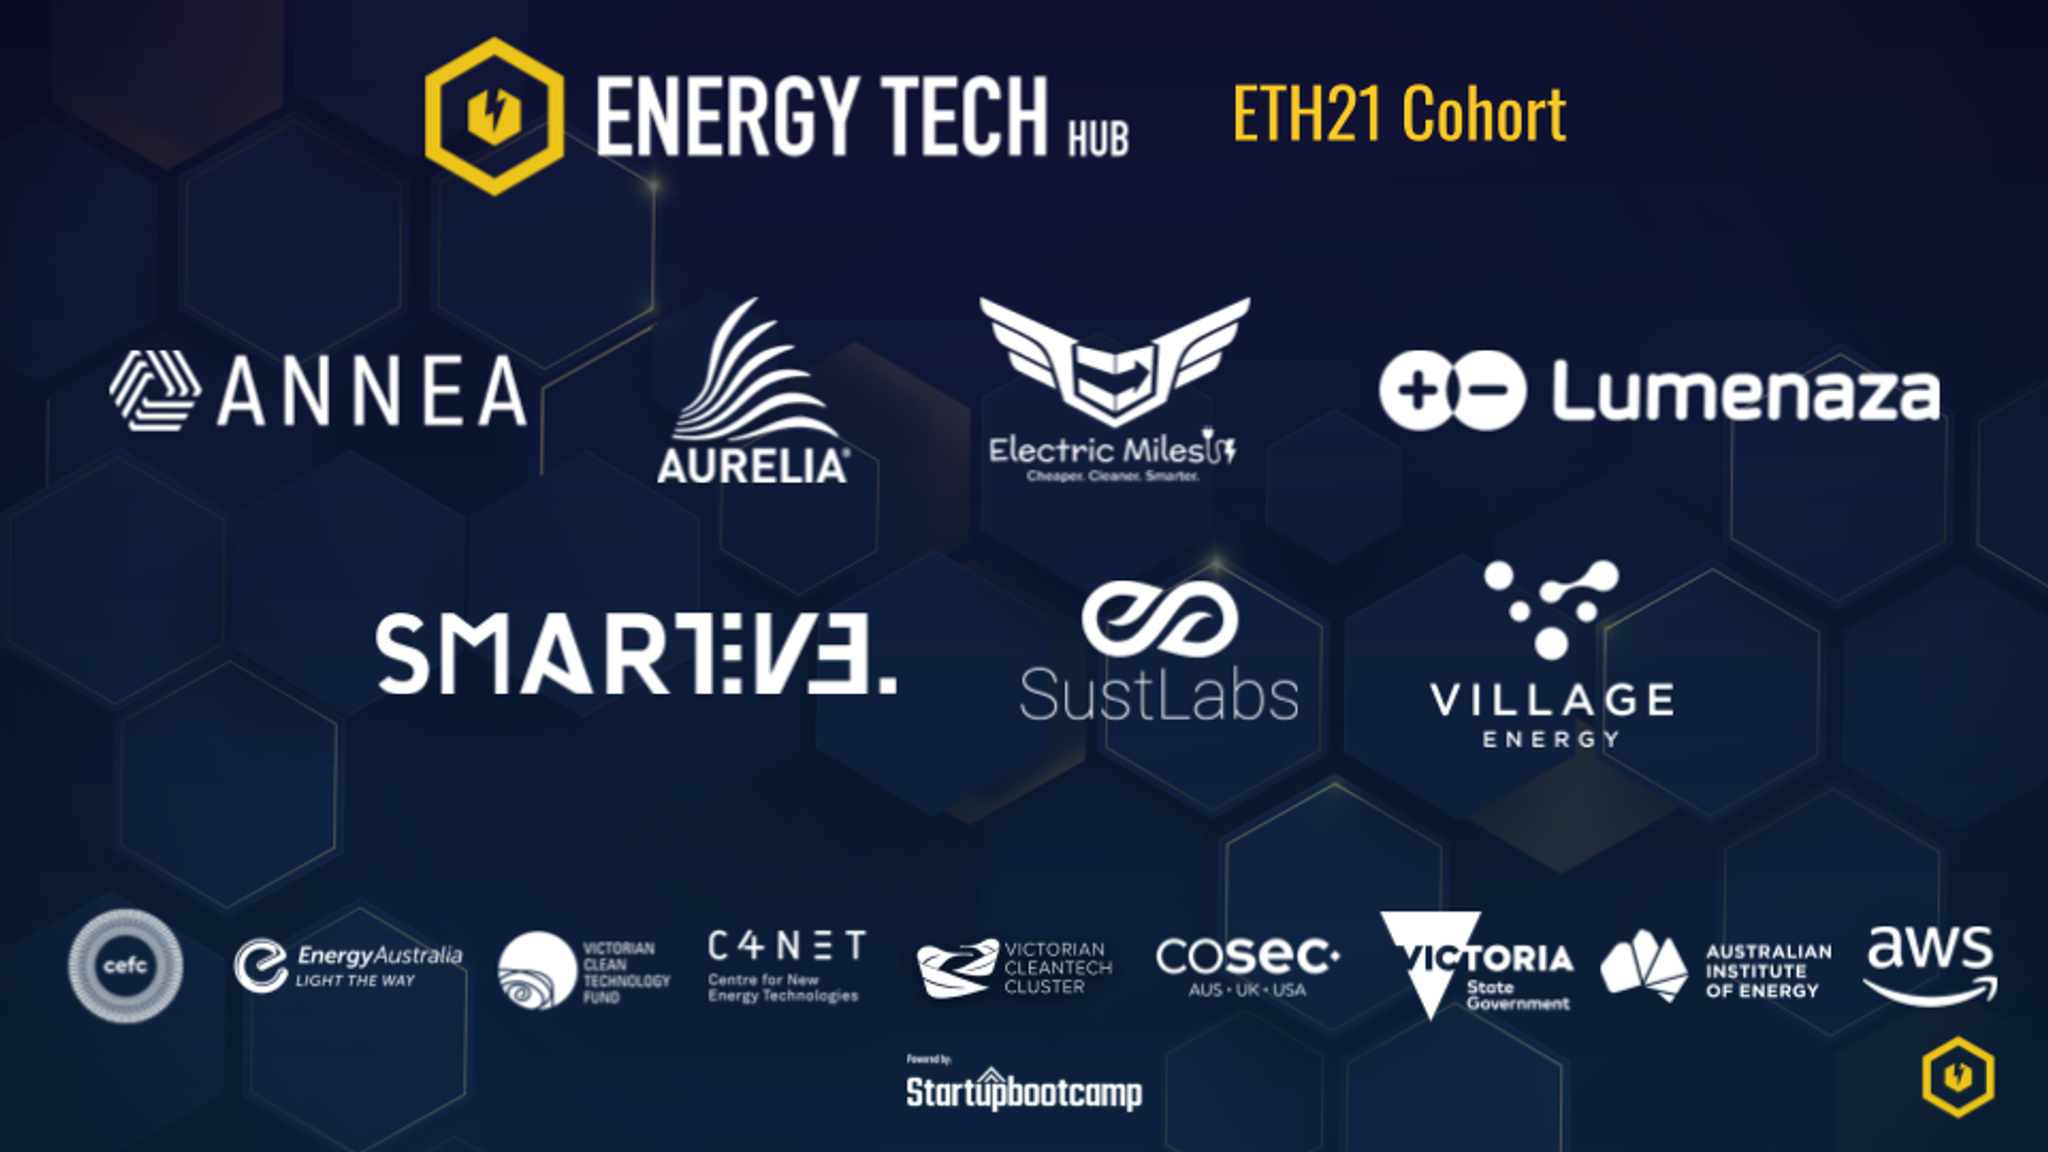 EnergyTech Hub (ETH) is proud to announce the ETH21 cohort